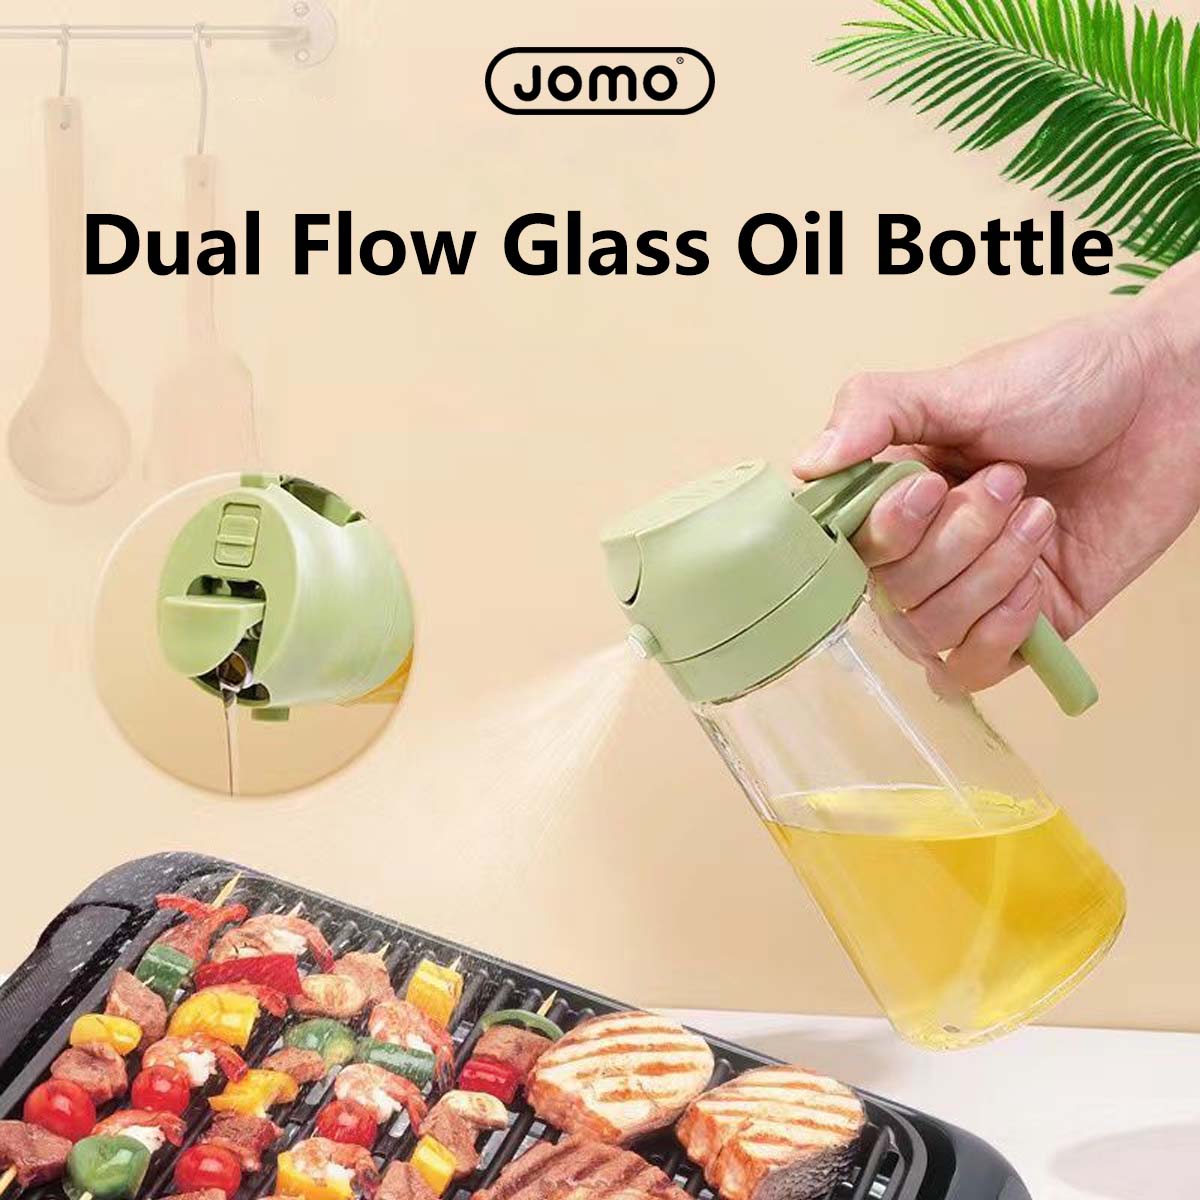 Jomo Dual Flow Glass Oil Bottle